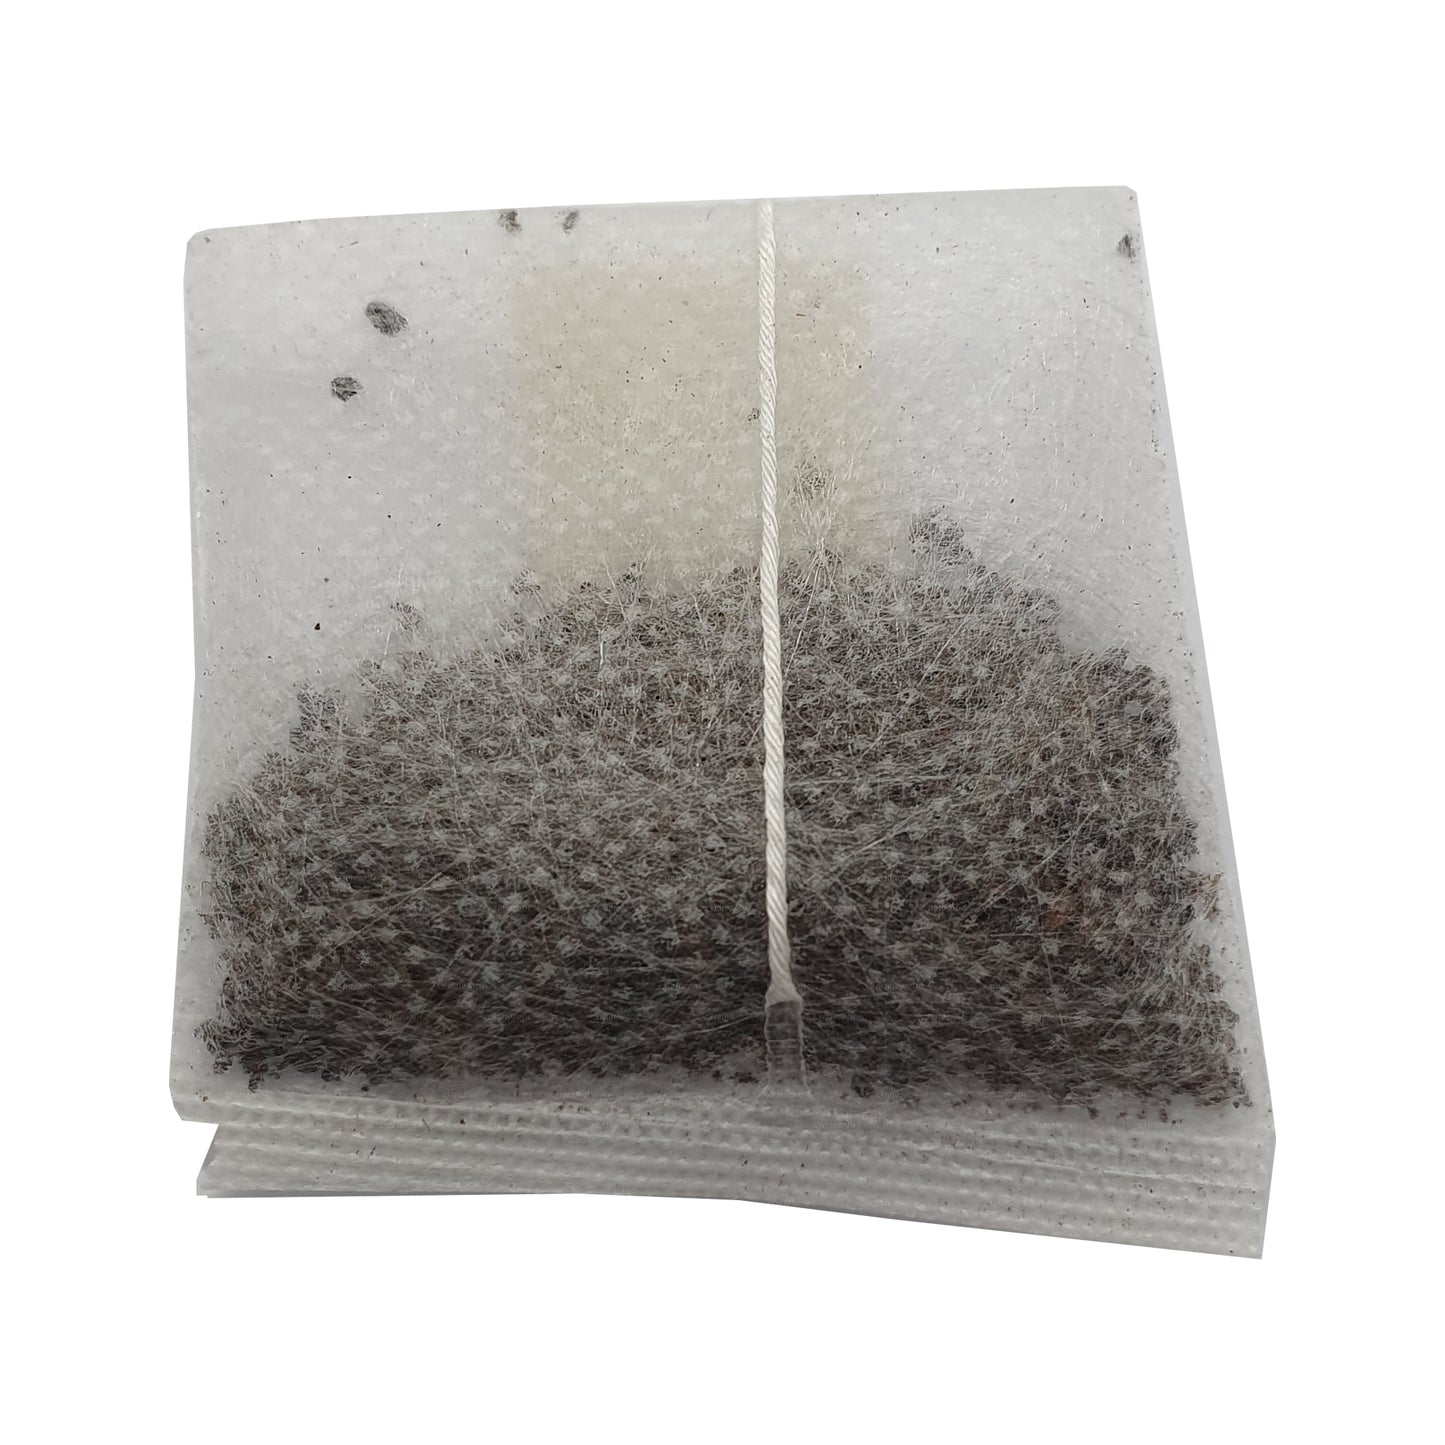 Травяной чай Лакпура Горака (40 г) 30 пакетиков